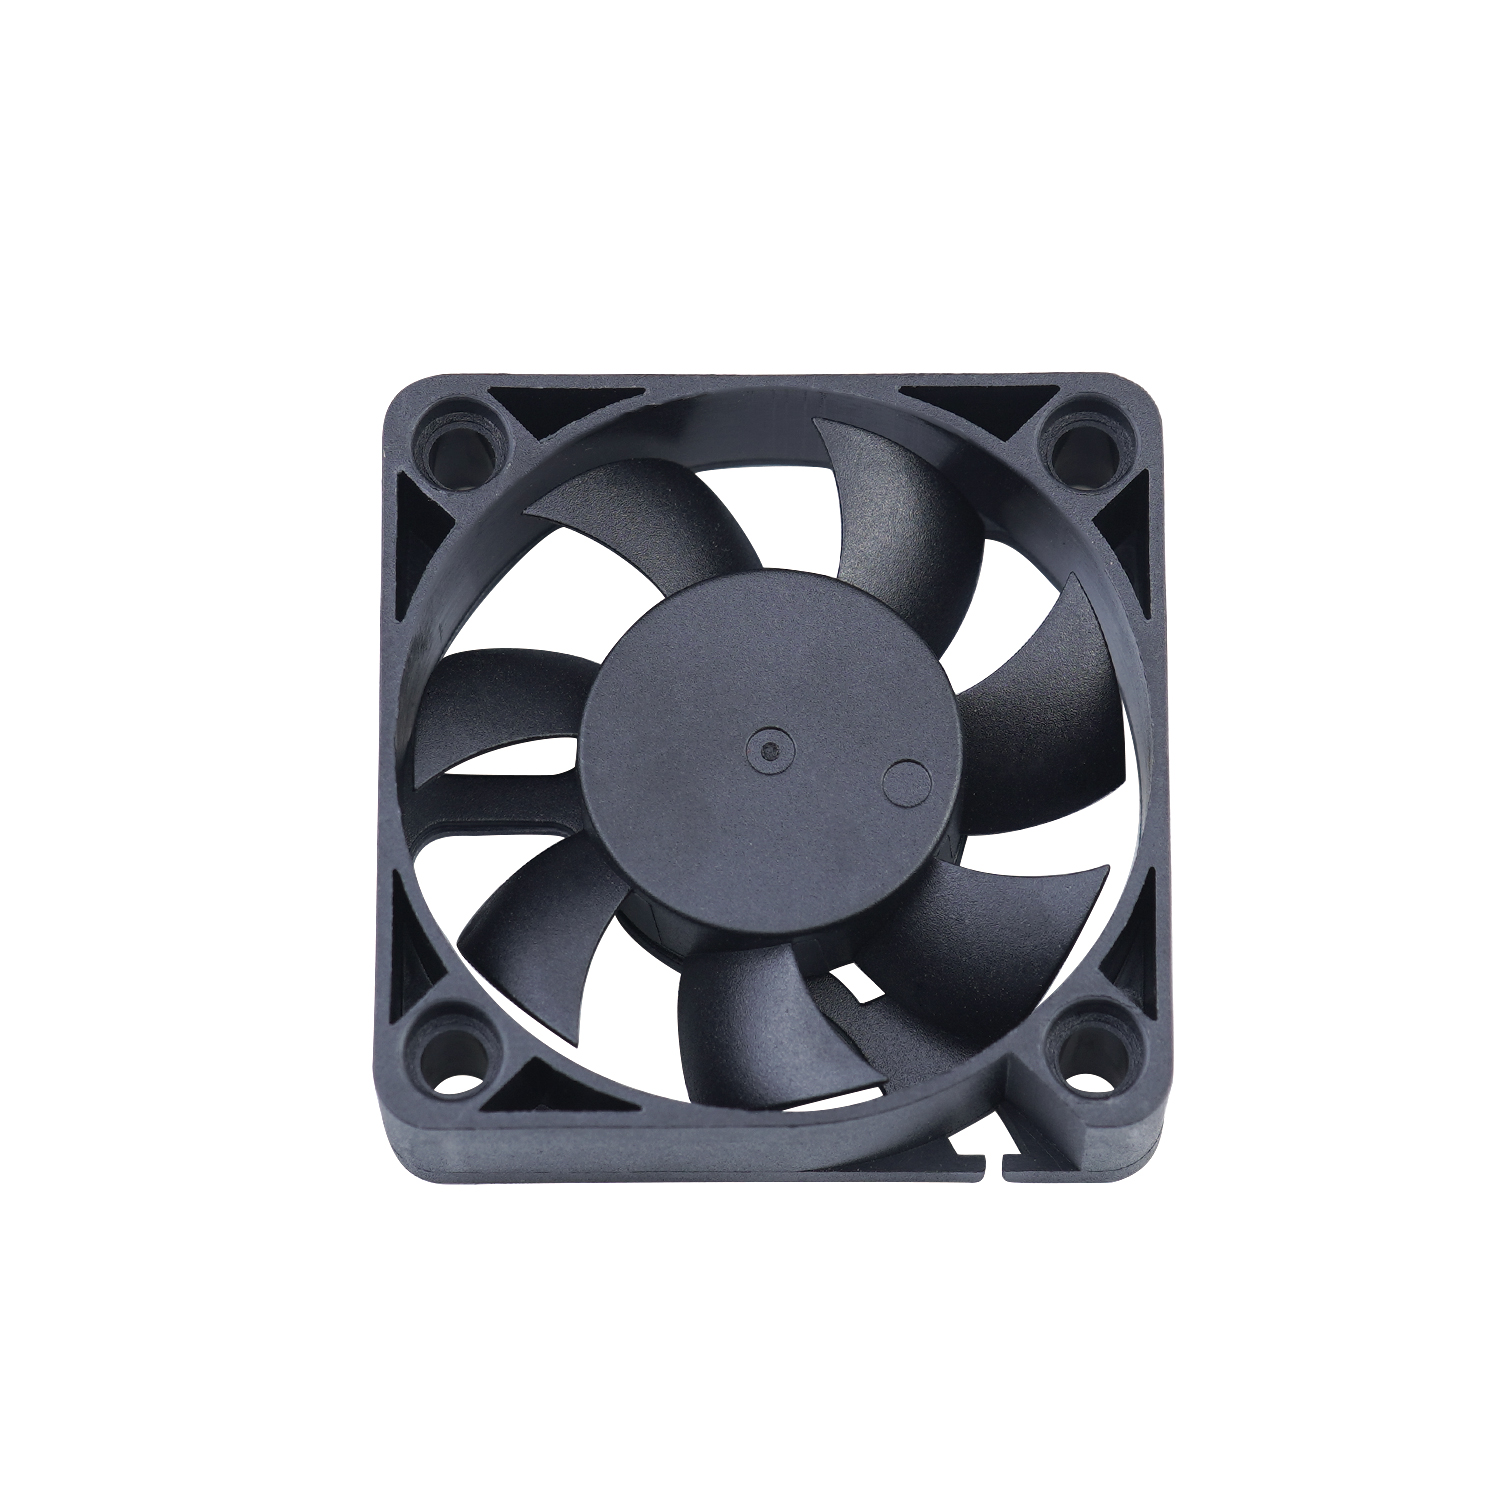  dc brushless 1.57 inch dc fan 12 volt cooling fan